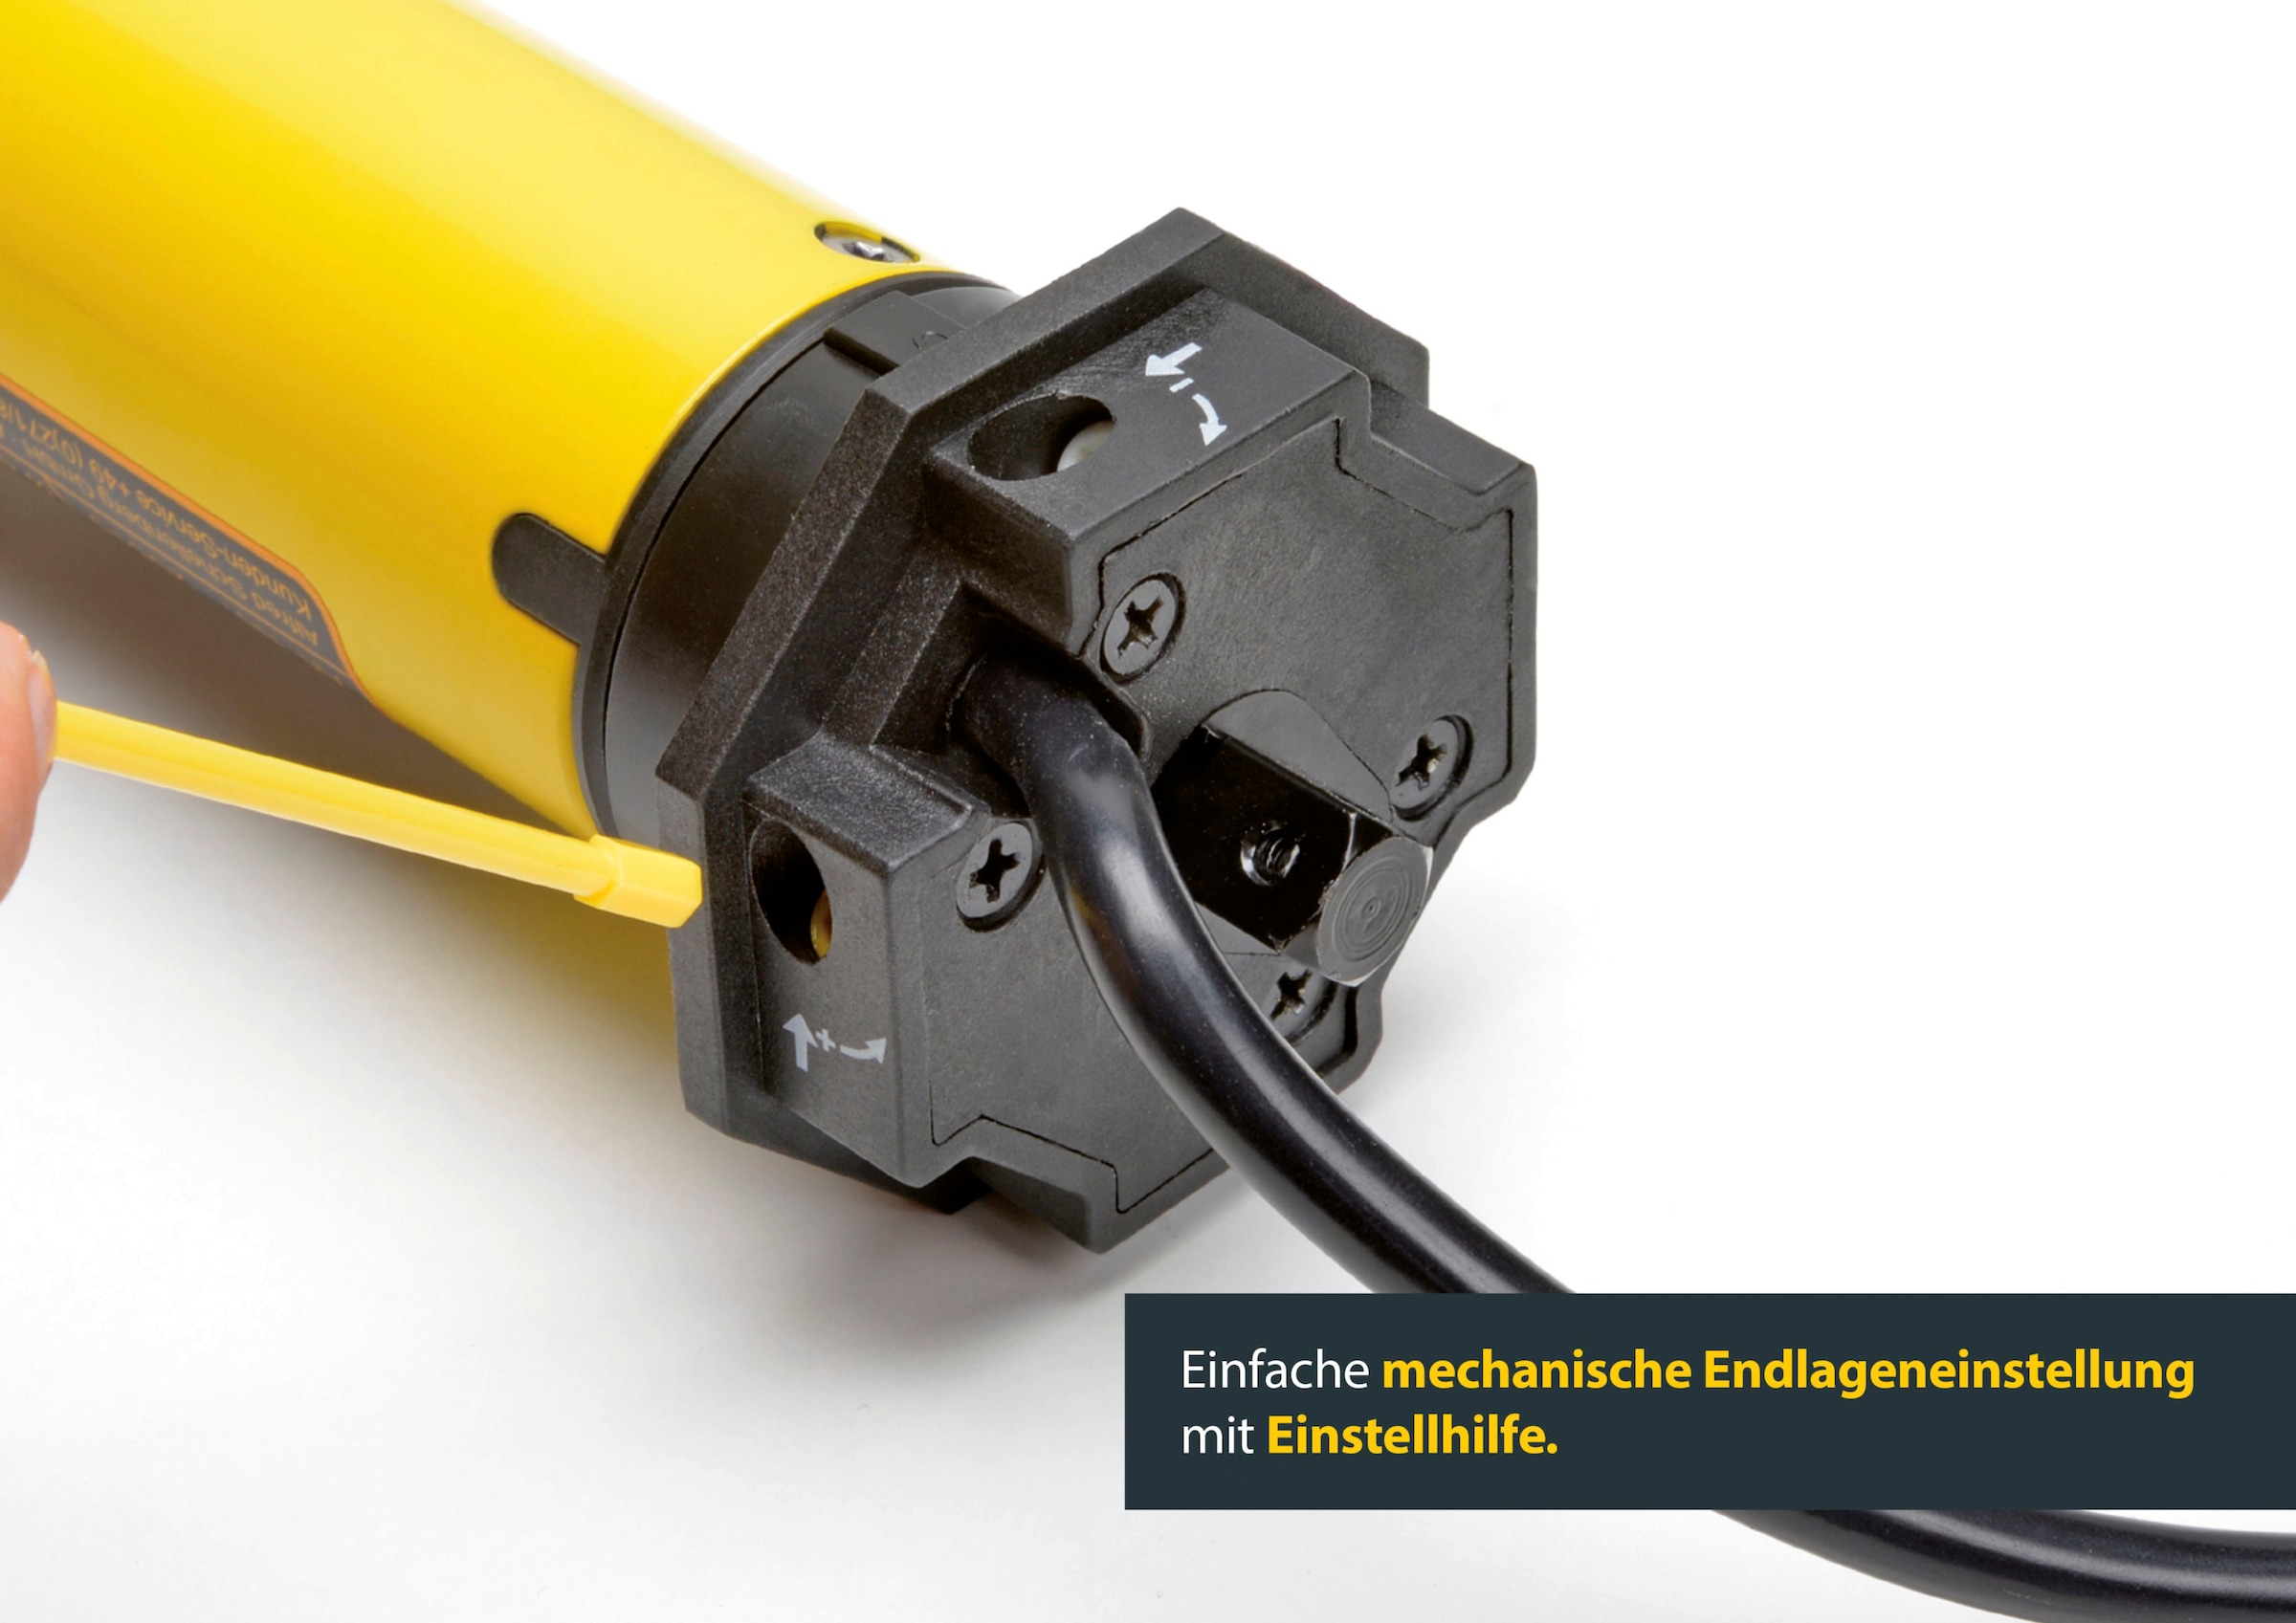 SCHELLENBERG Rollladenmotor »»Standard Maxi« 40 Nm, mechanische Endlageneinstellung«, für 60 mm Achtkantwellen bis 15 m² Rollladenfläche, 20640